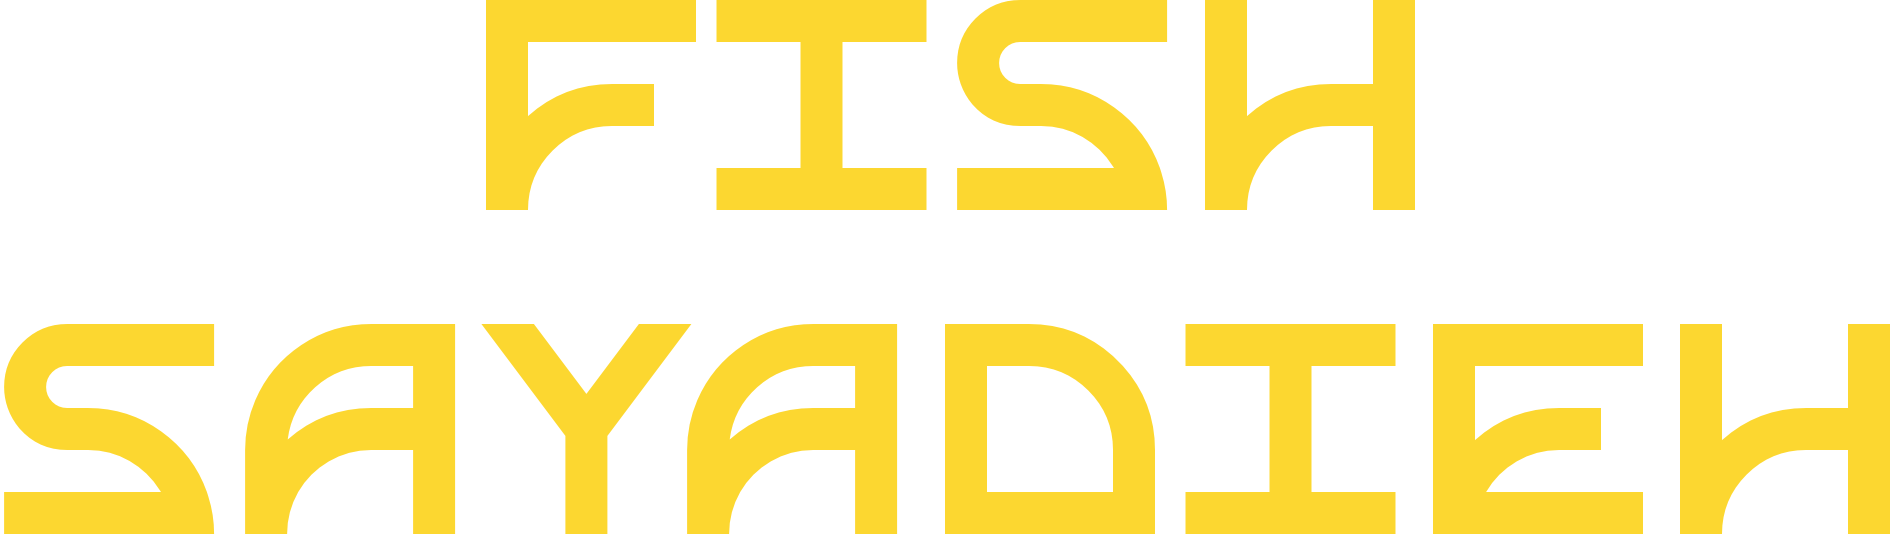 Fish Sayadieh logo